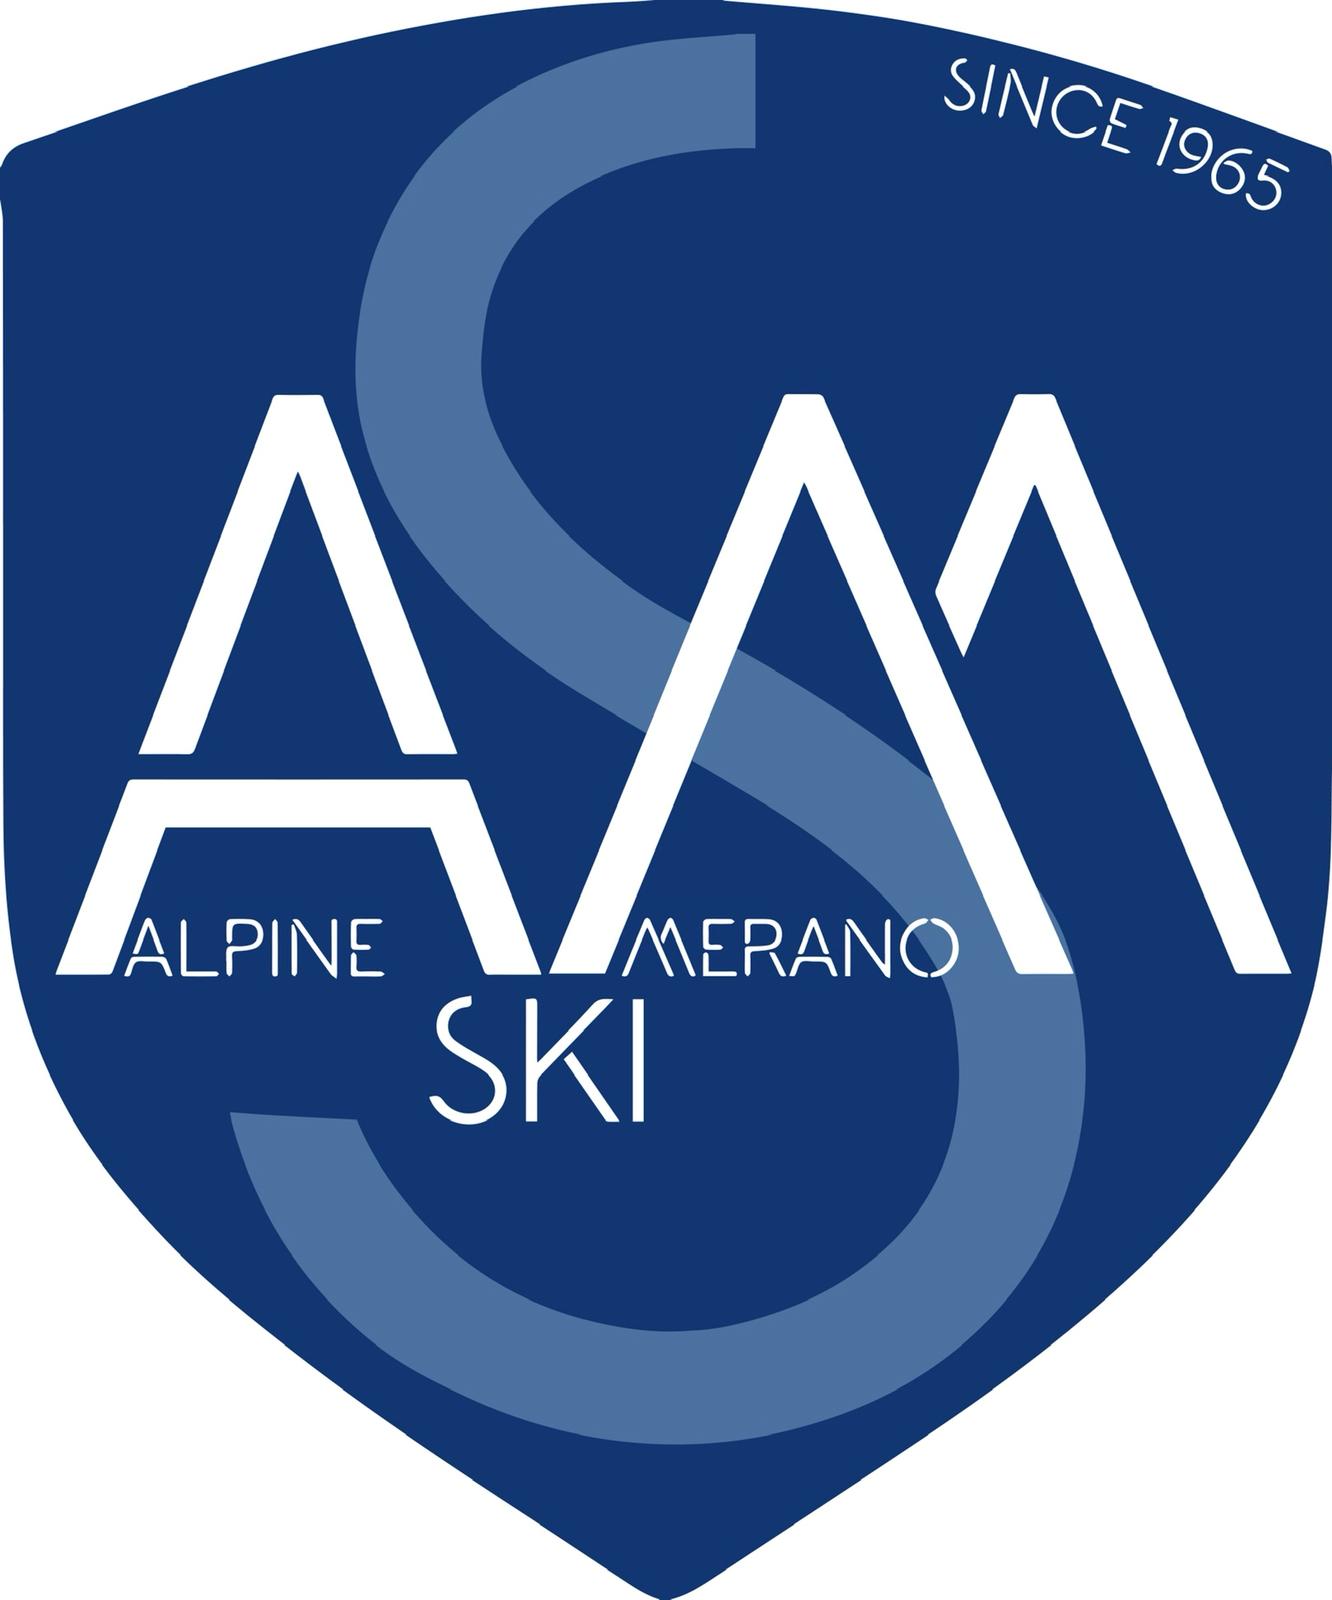 A.S. Merano Alpine Ski